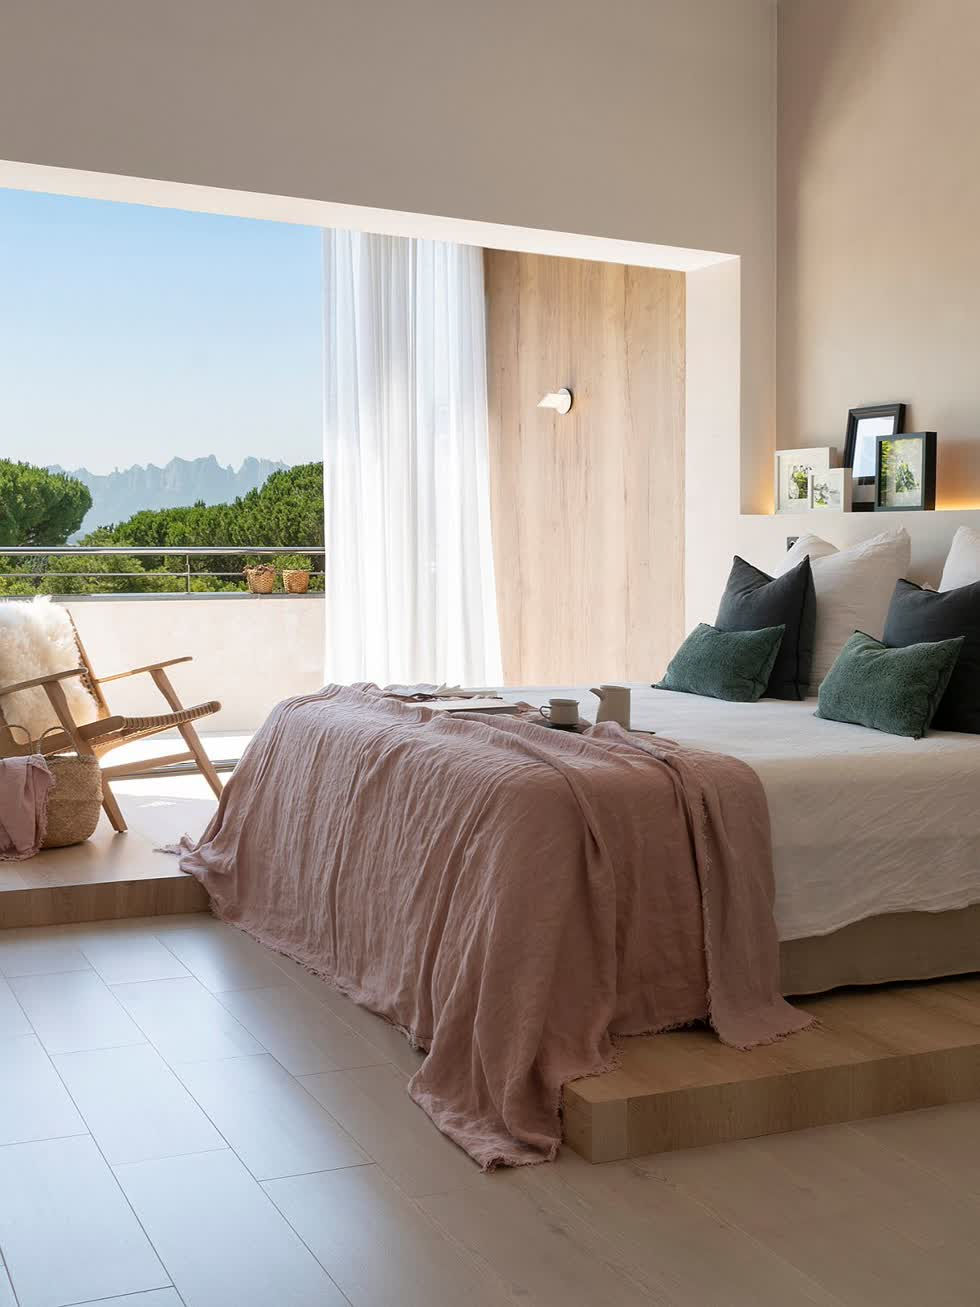   Phòng ngủ tuyệt đẹp theo phong cách Scandinavia, nơi khăn trải giường và gối mang màu sắc.  